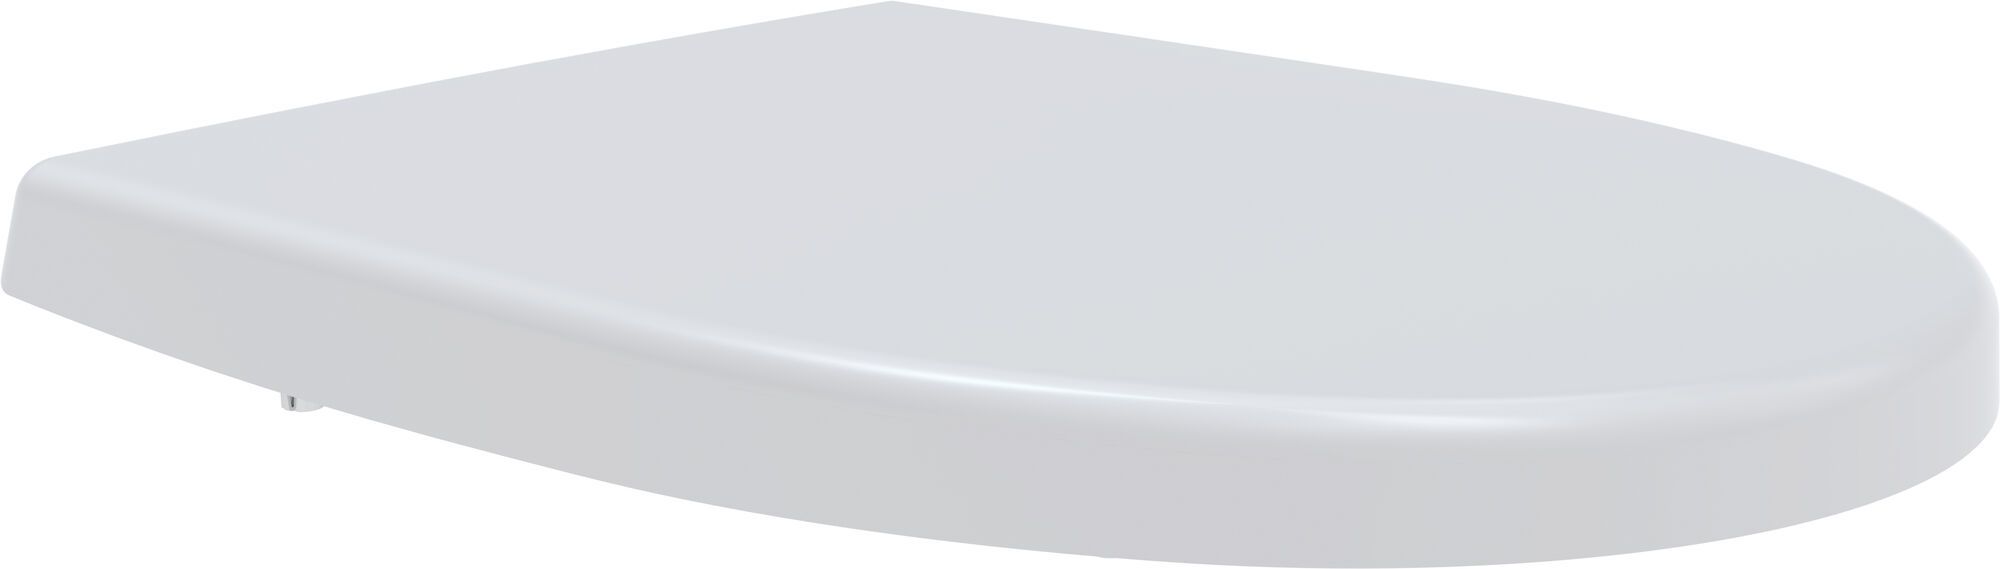 Toilet seat D-Star 300 S, white